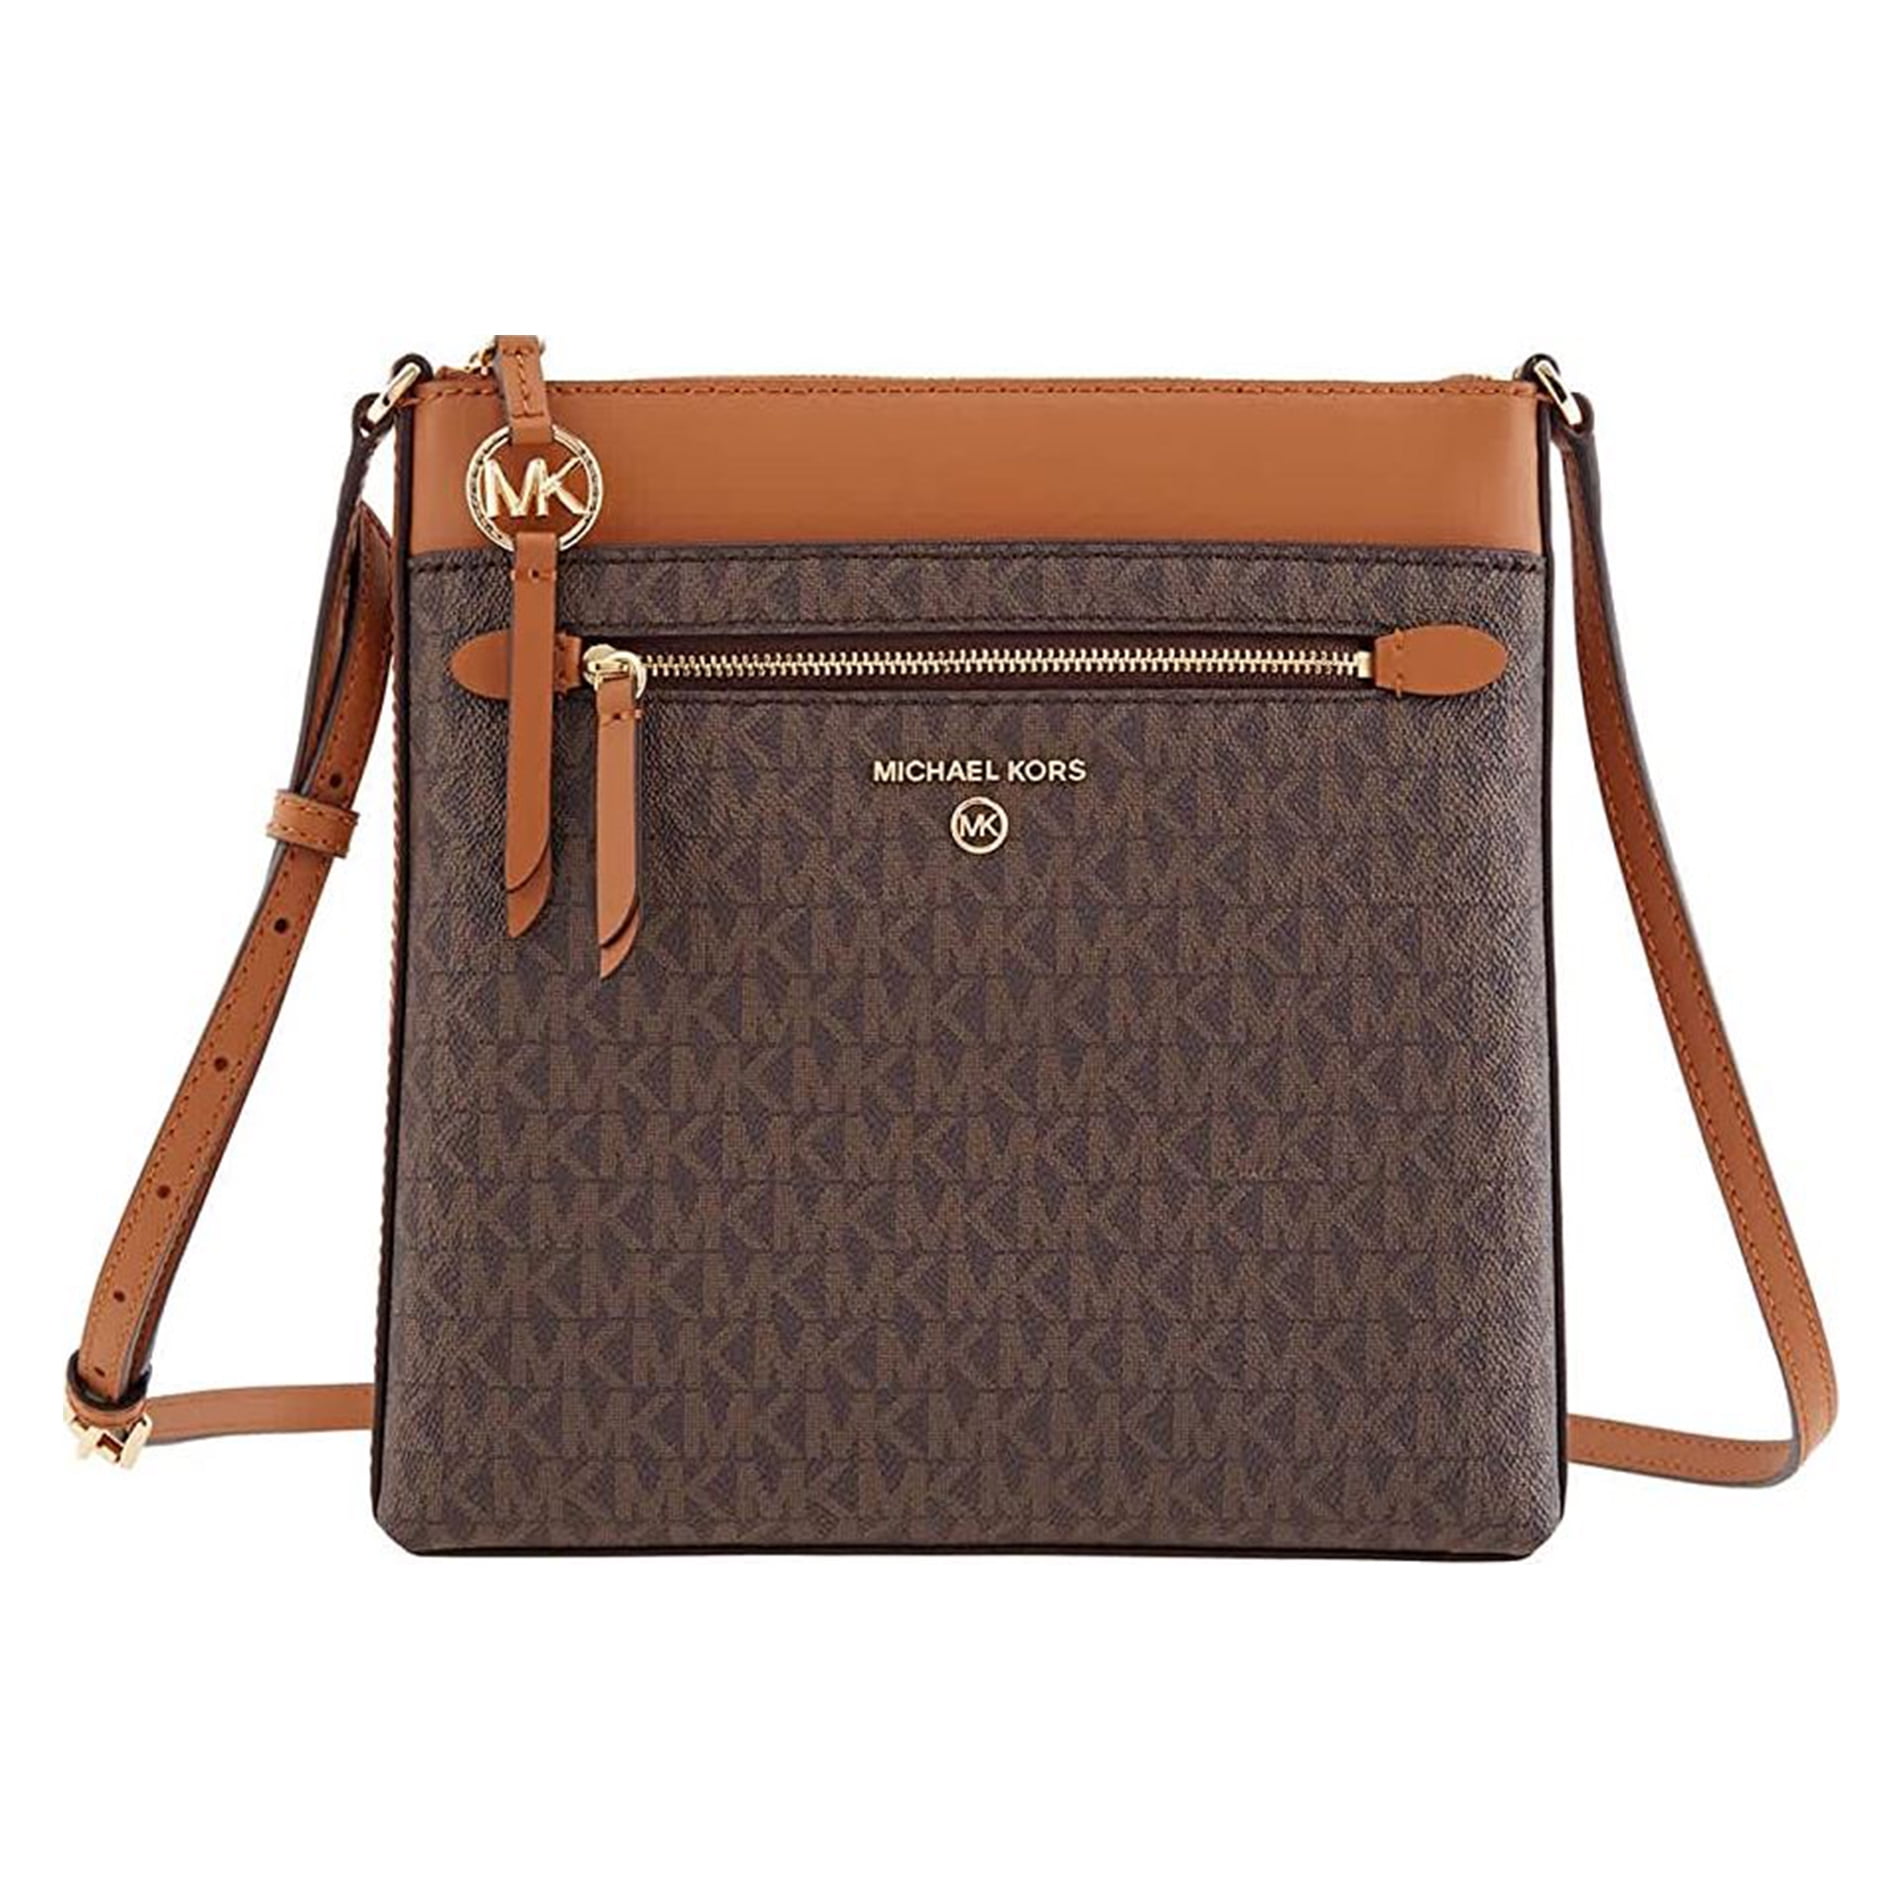 Buy EMPORIO ARMANI Lily Crossbody Bag with Adjustable Strap, Brown Color  Women